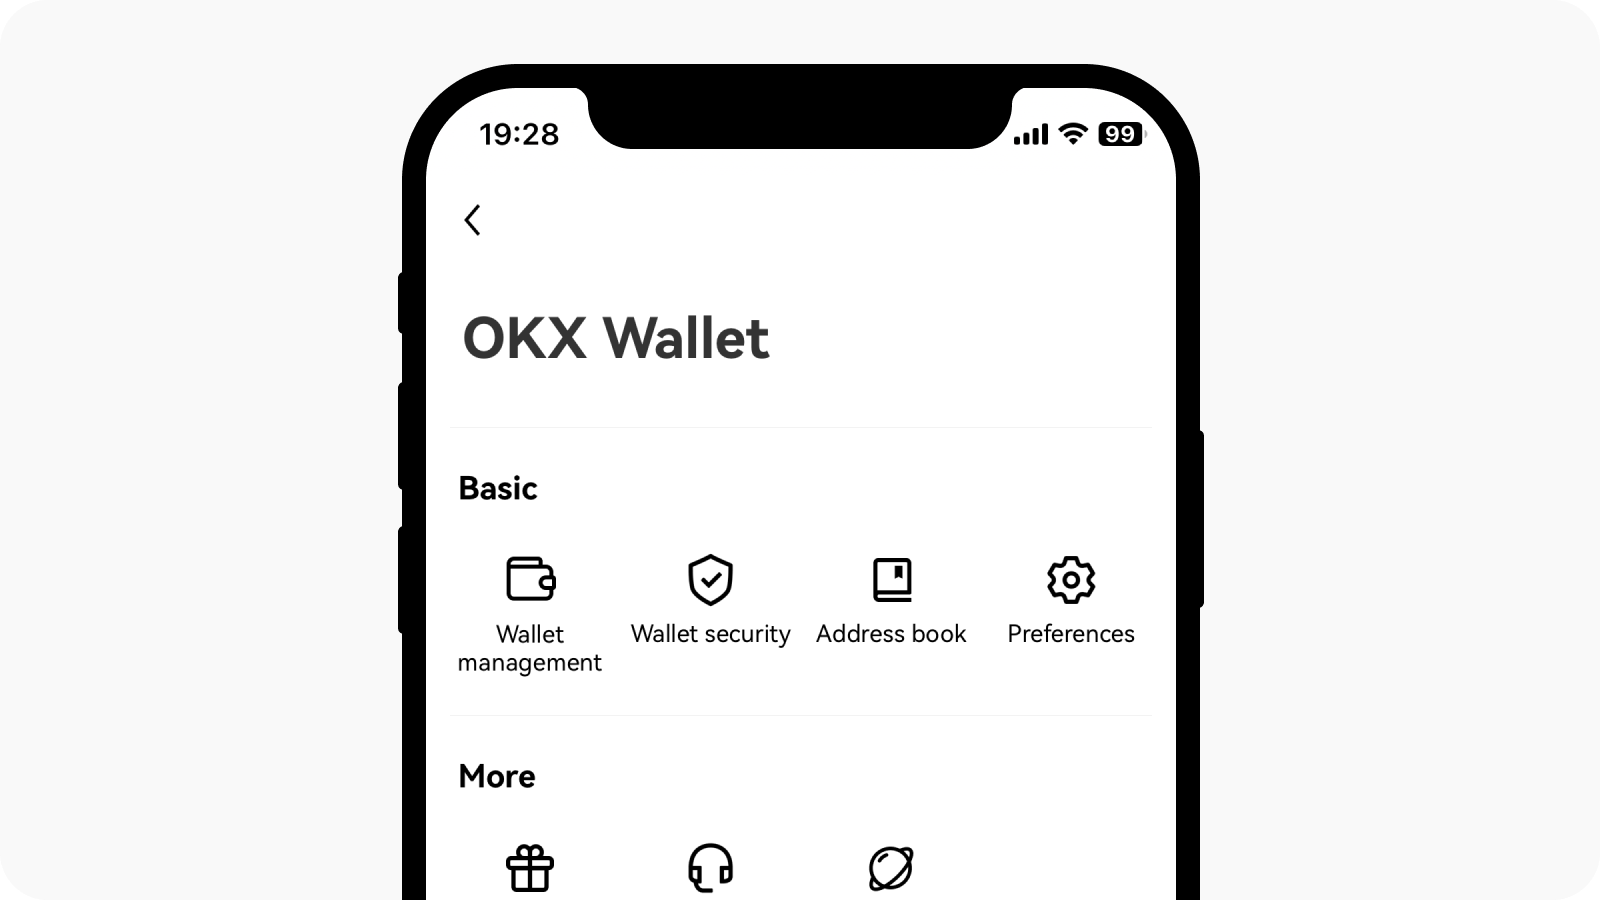 Select user center at top left corner and find Wallet management under OKX wallet